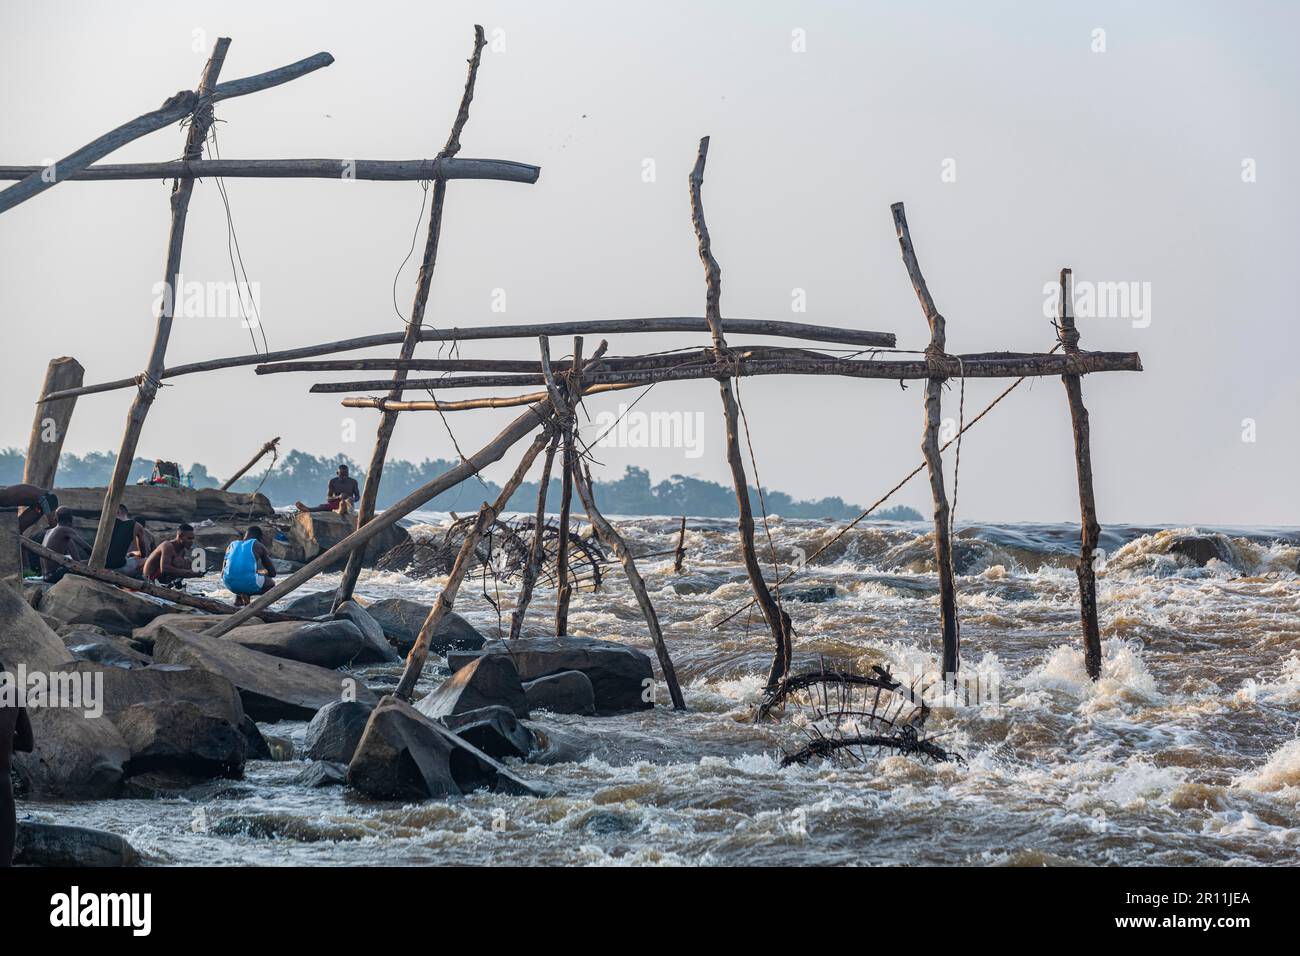 Trépieds en bois avec paniers attachés, tribu Wagenya, Kisangani, fleuve Congo, RD Congo Banque D'Images